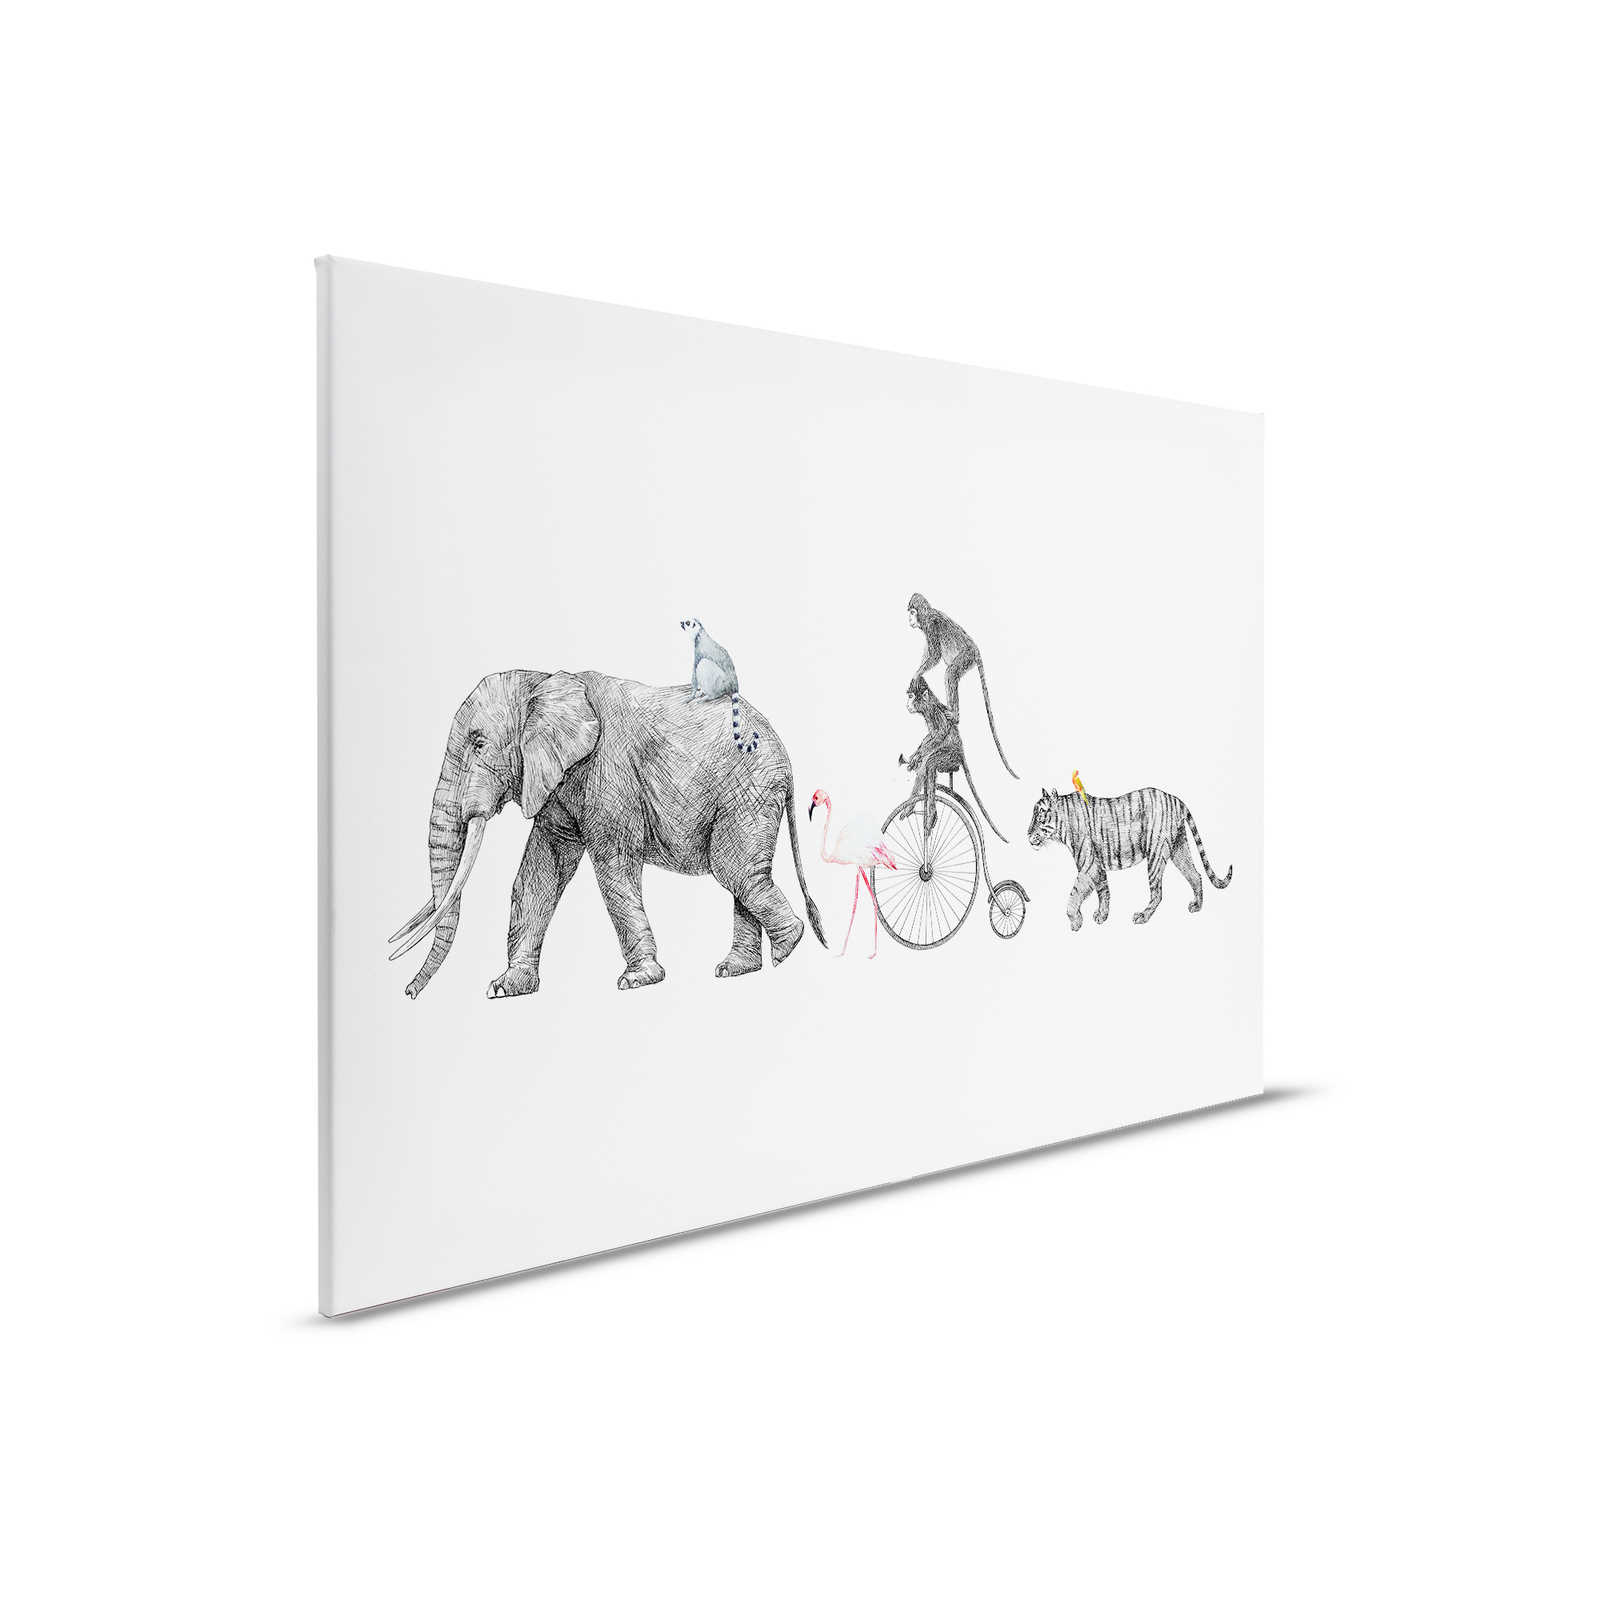         Leinwandbild Kinderzimmermotiv mit Tieren in einer Reihe – 0,90 m x 0,60 m
    